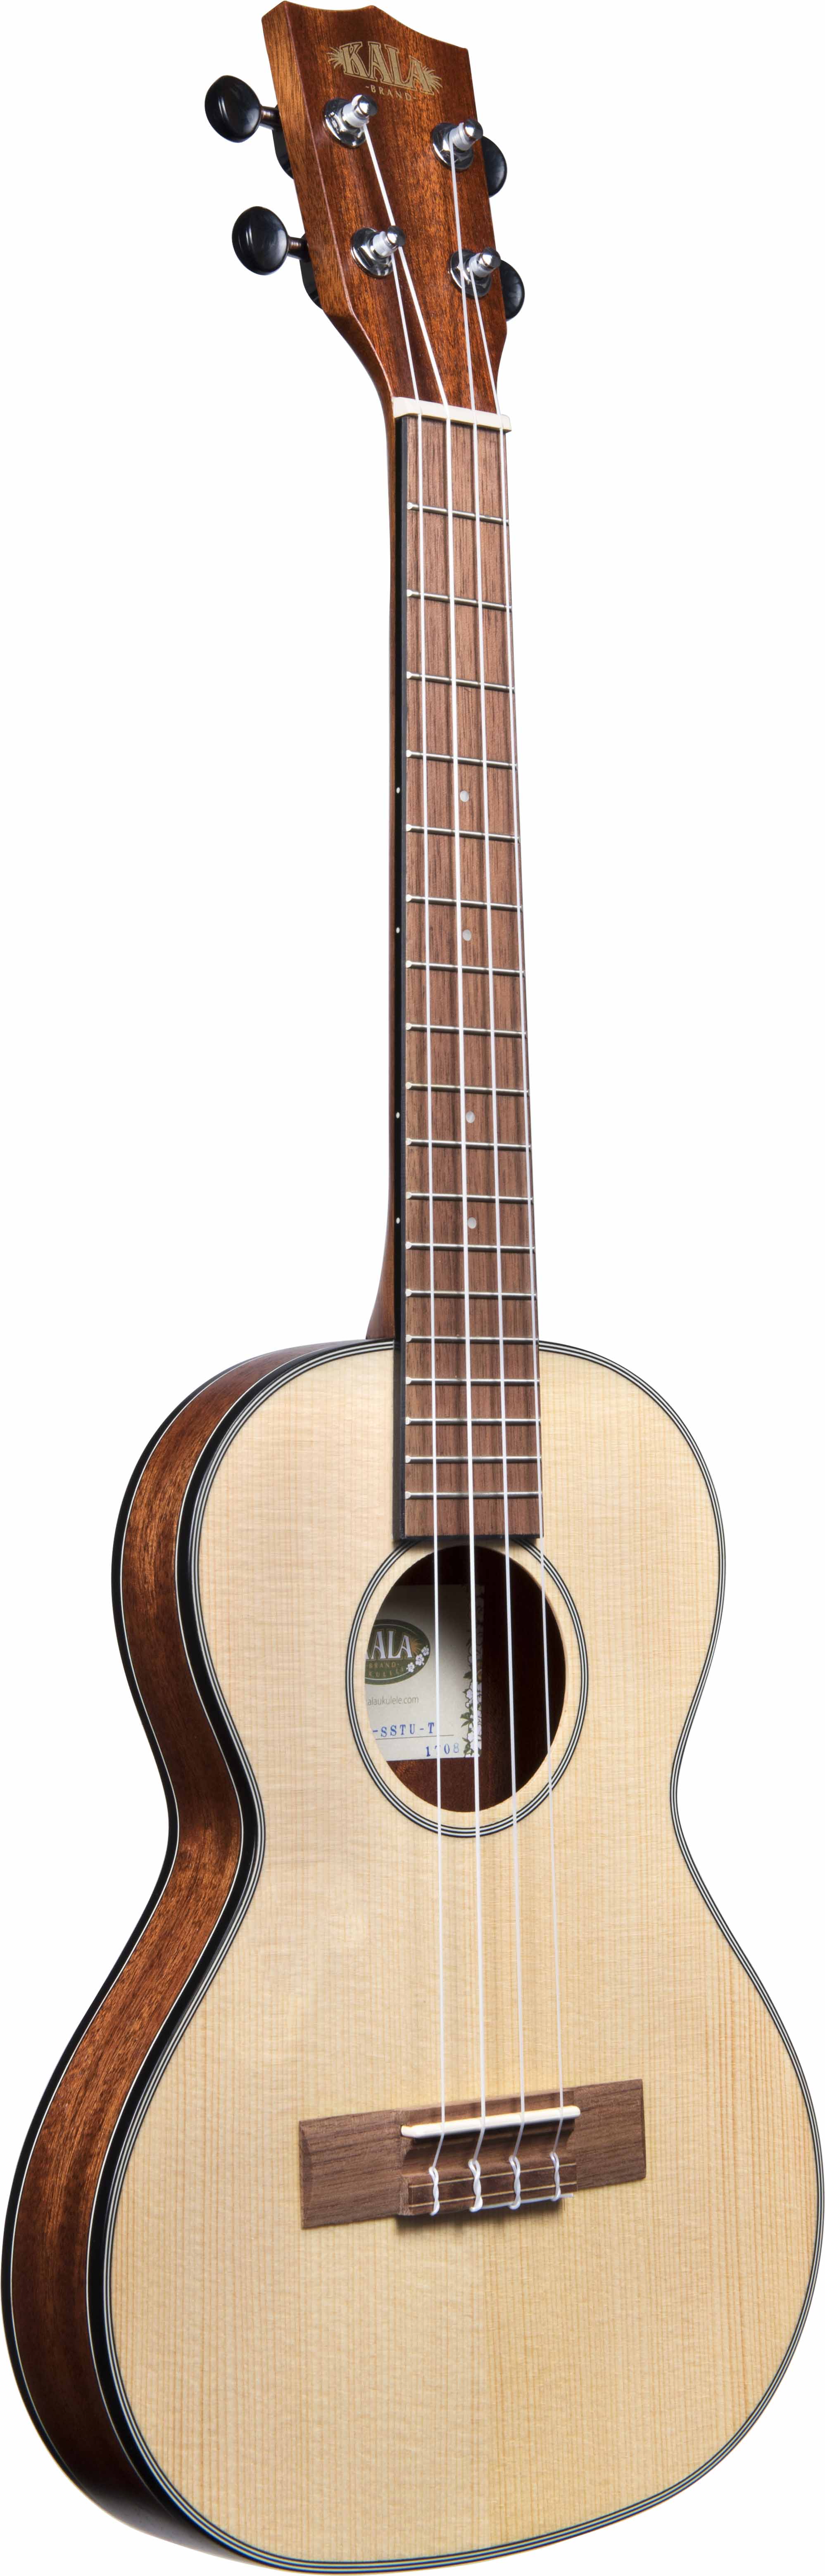 travel case tenor ukulele